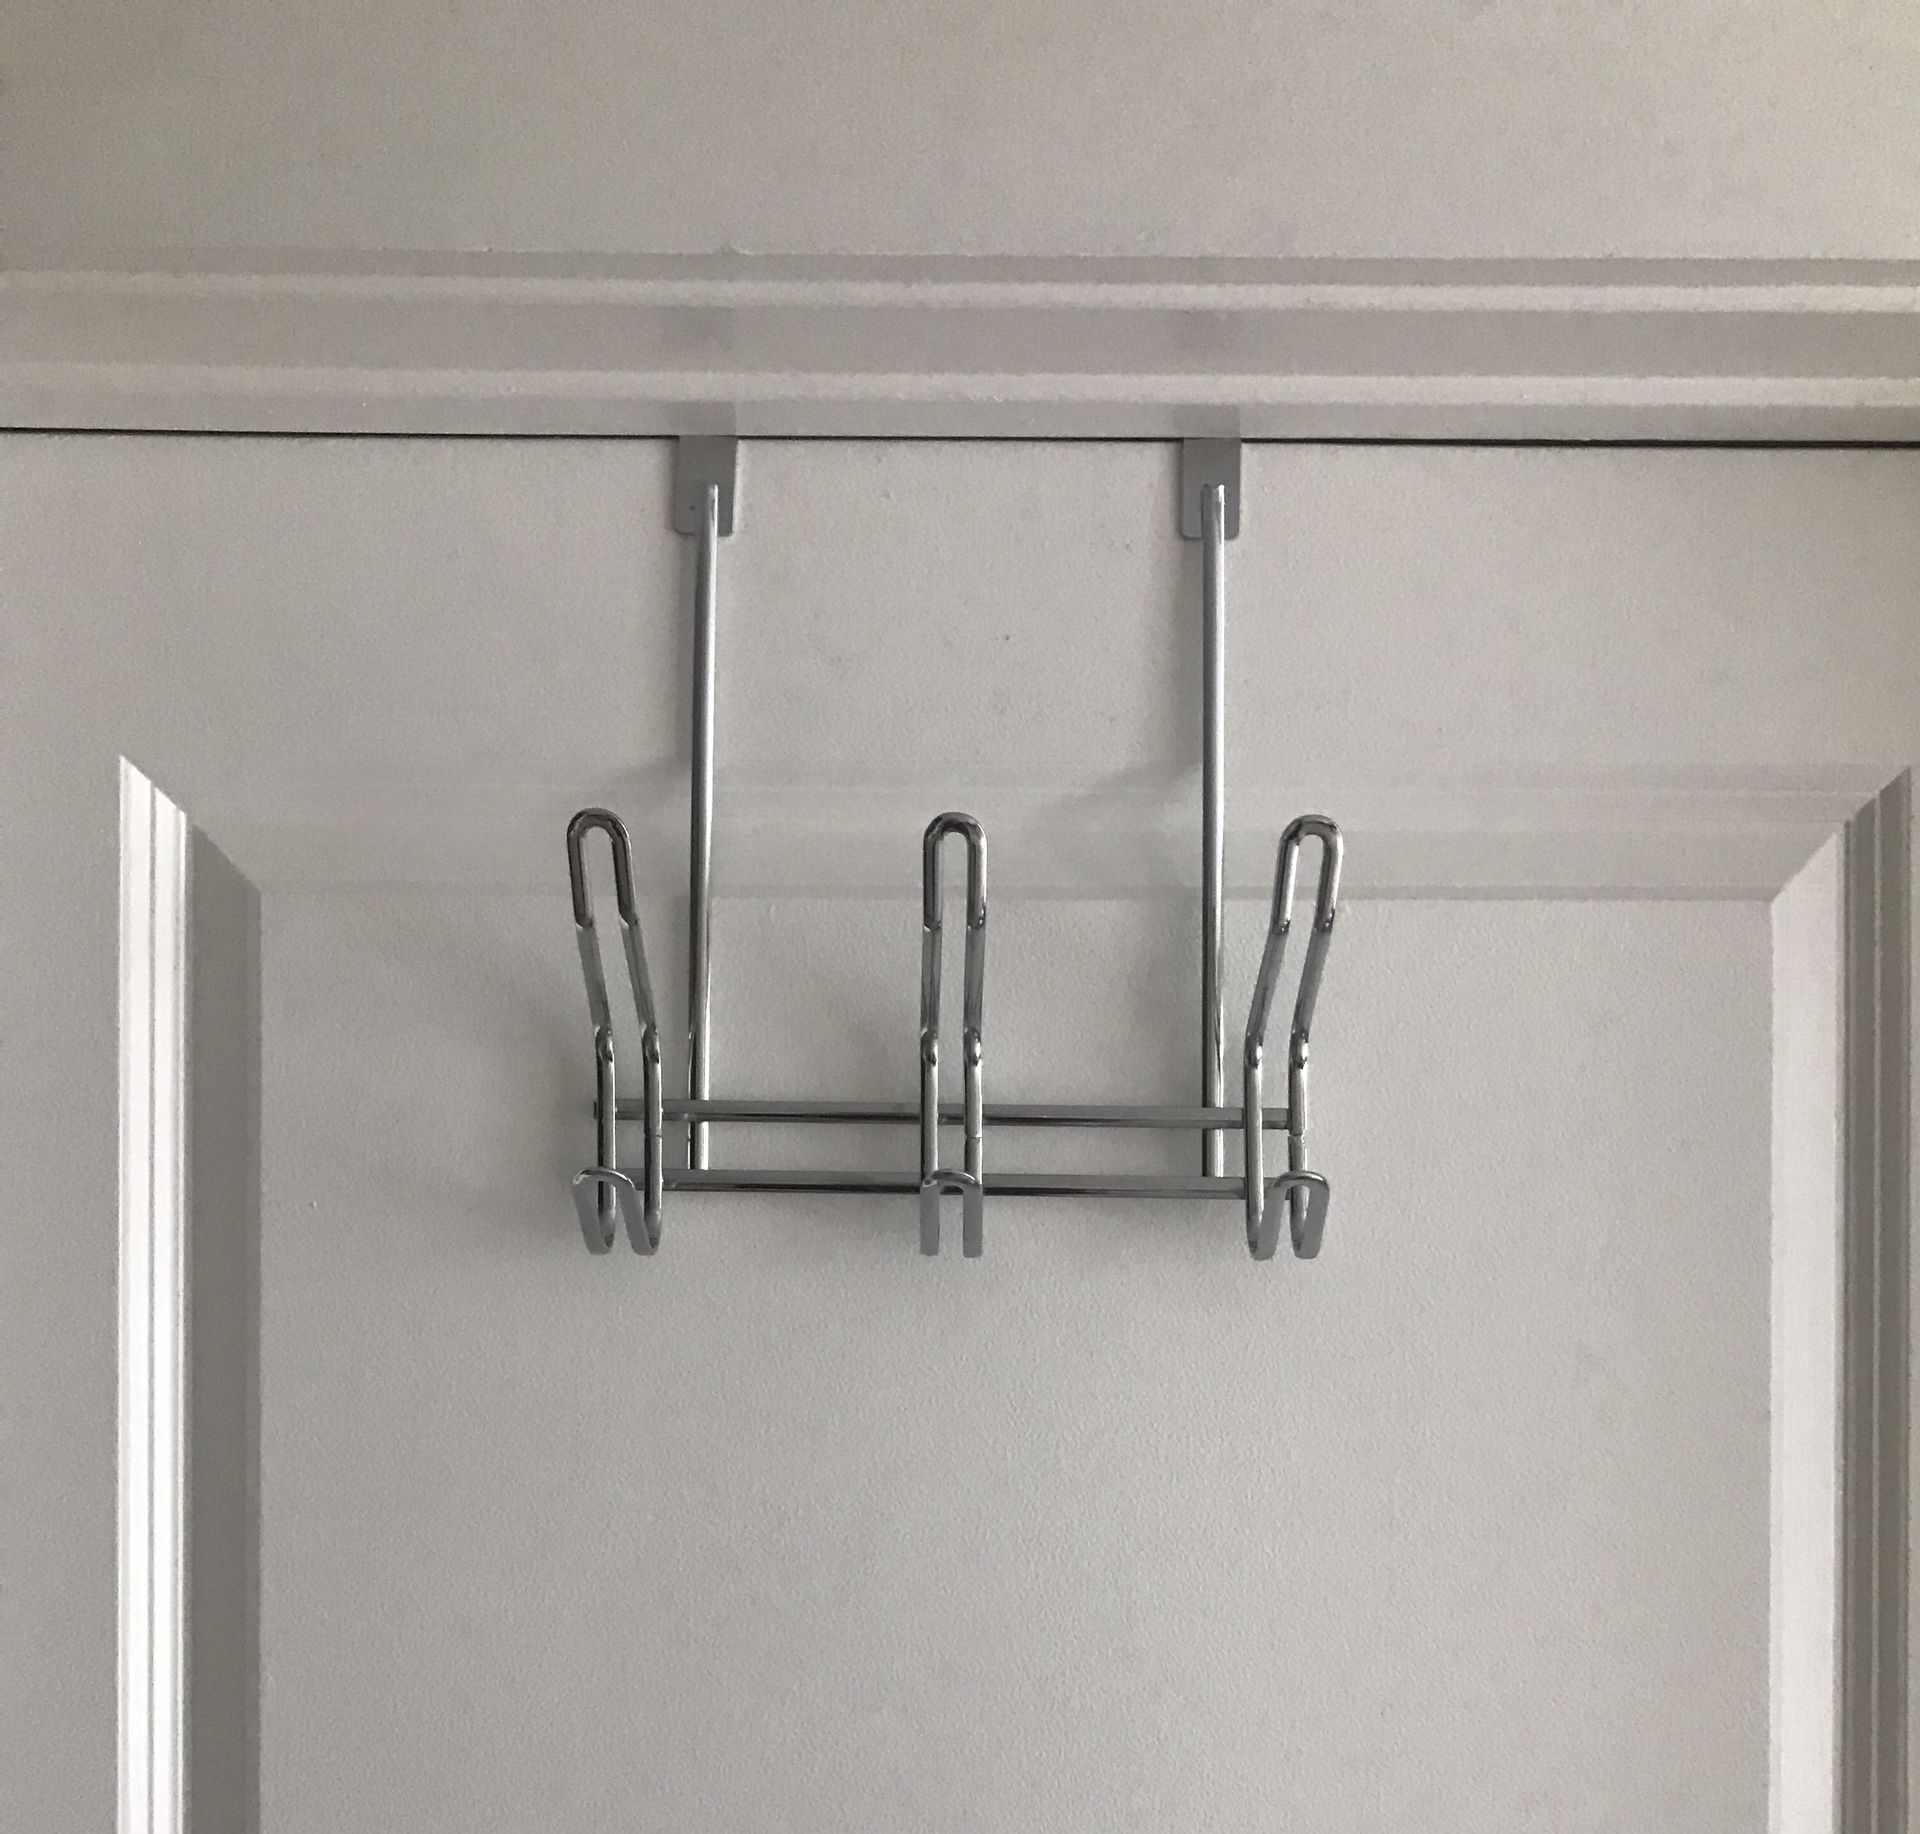 Over-The-Door Hanger with 3 Hooks